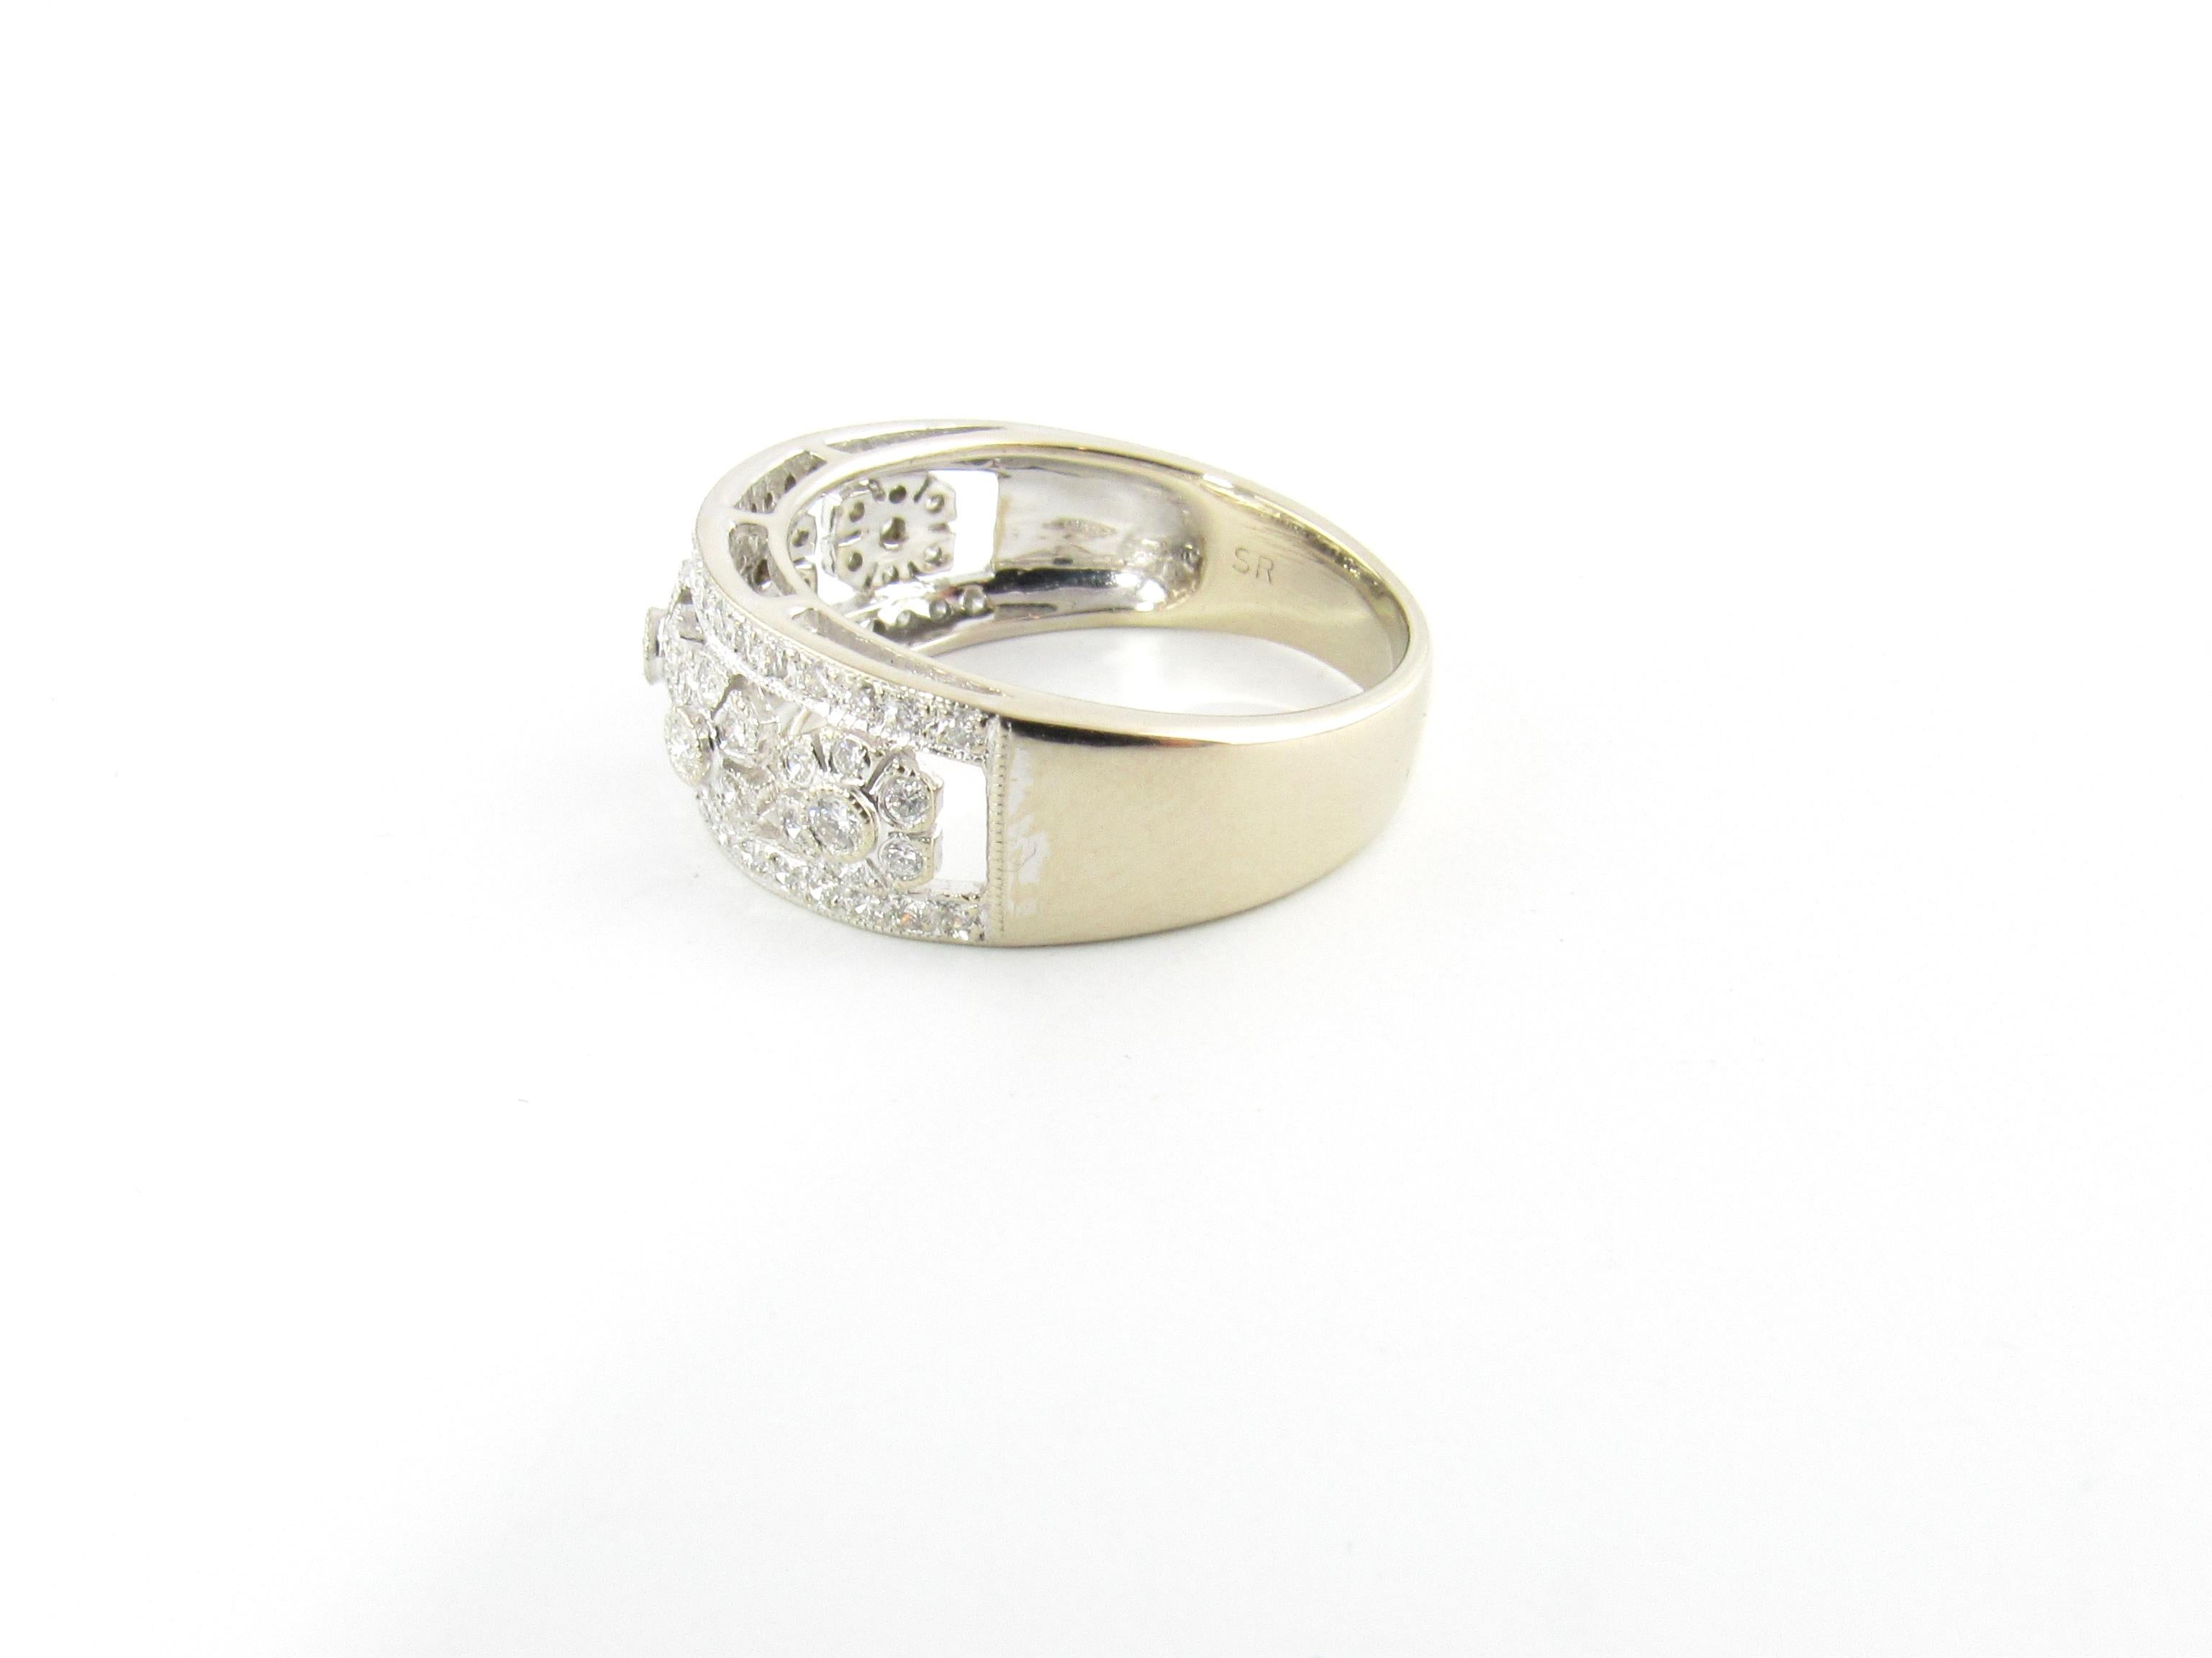 Vieille bague en or blanc 18 carats avec diamant

Ce bracelet étincelant présente 72 diamants ronds de taille brillante sertis dans un superbe motif floral. Magnifiquement détaillé en or blanc 18K. Largeur : 8 mm. Tige : 4 mm.

Poids total